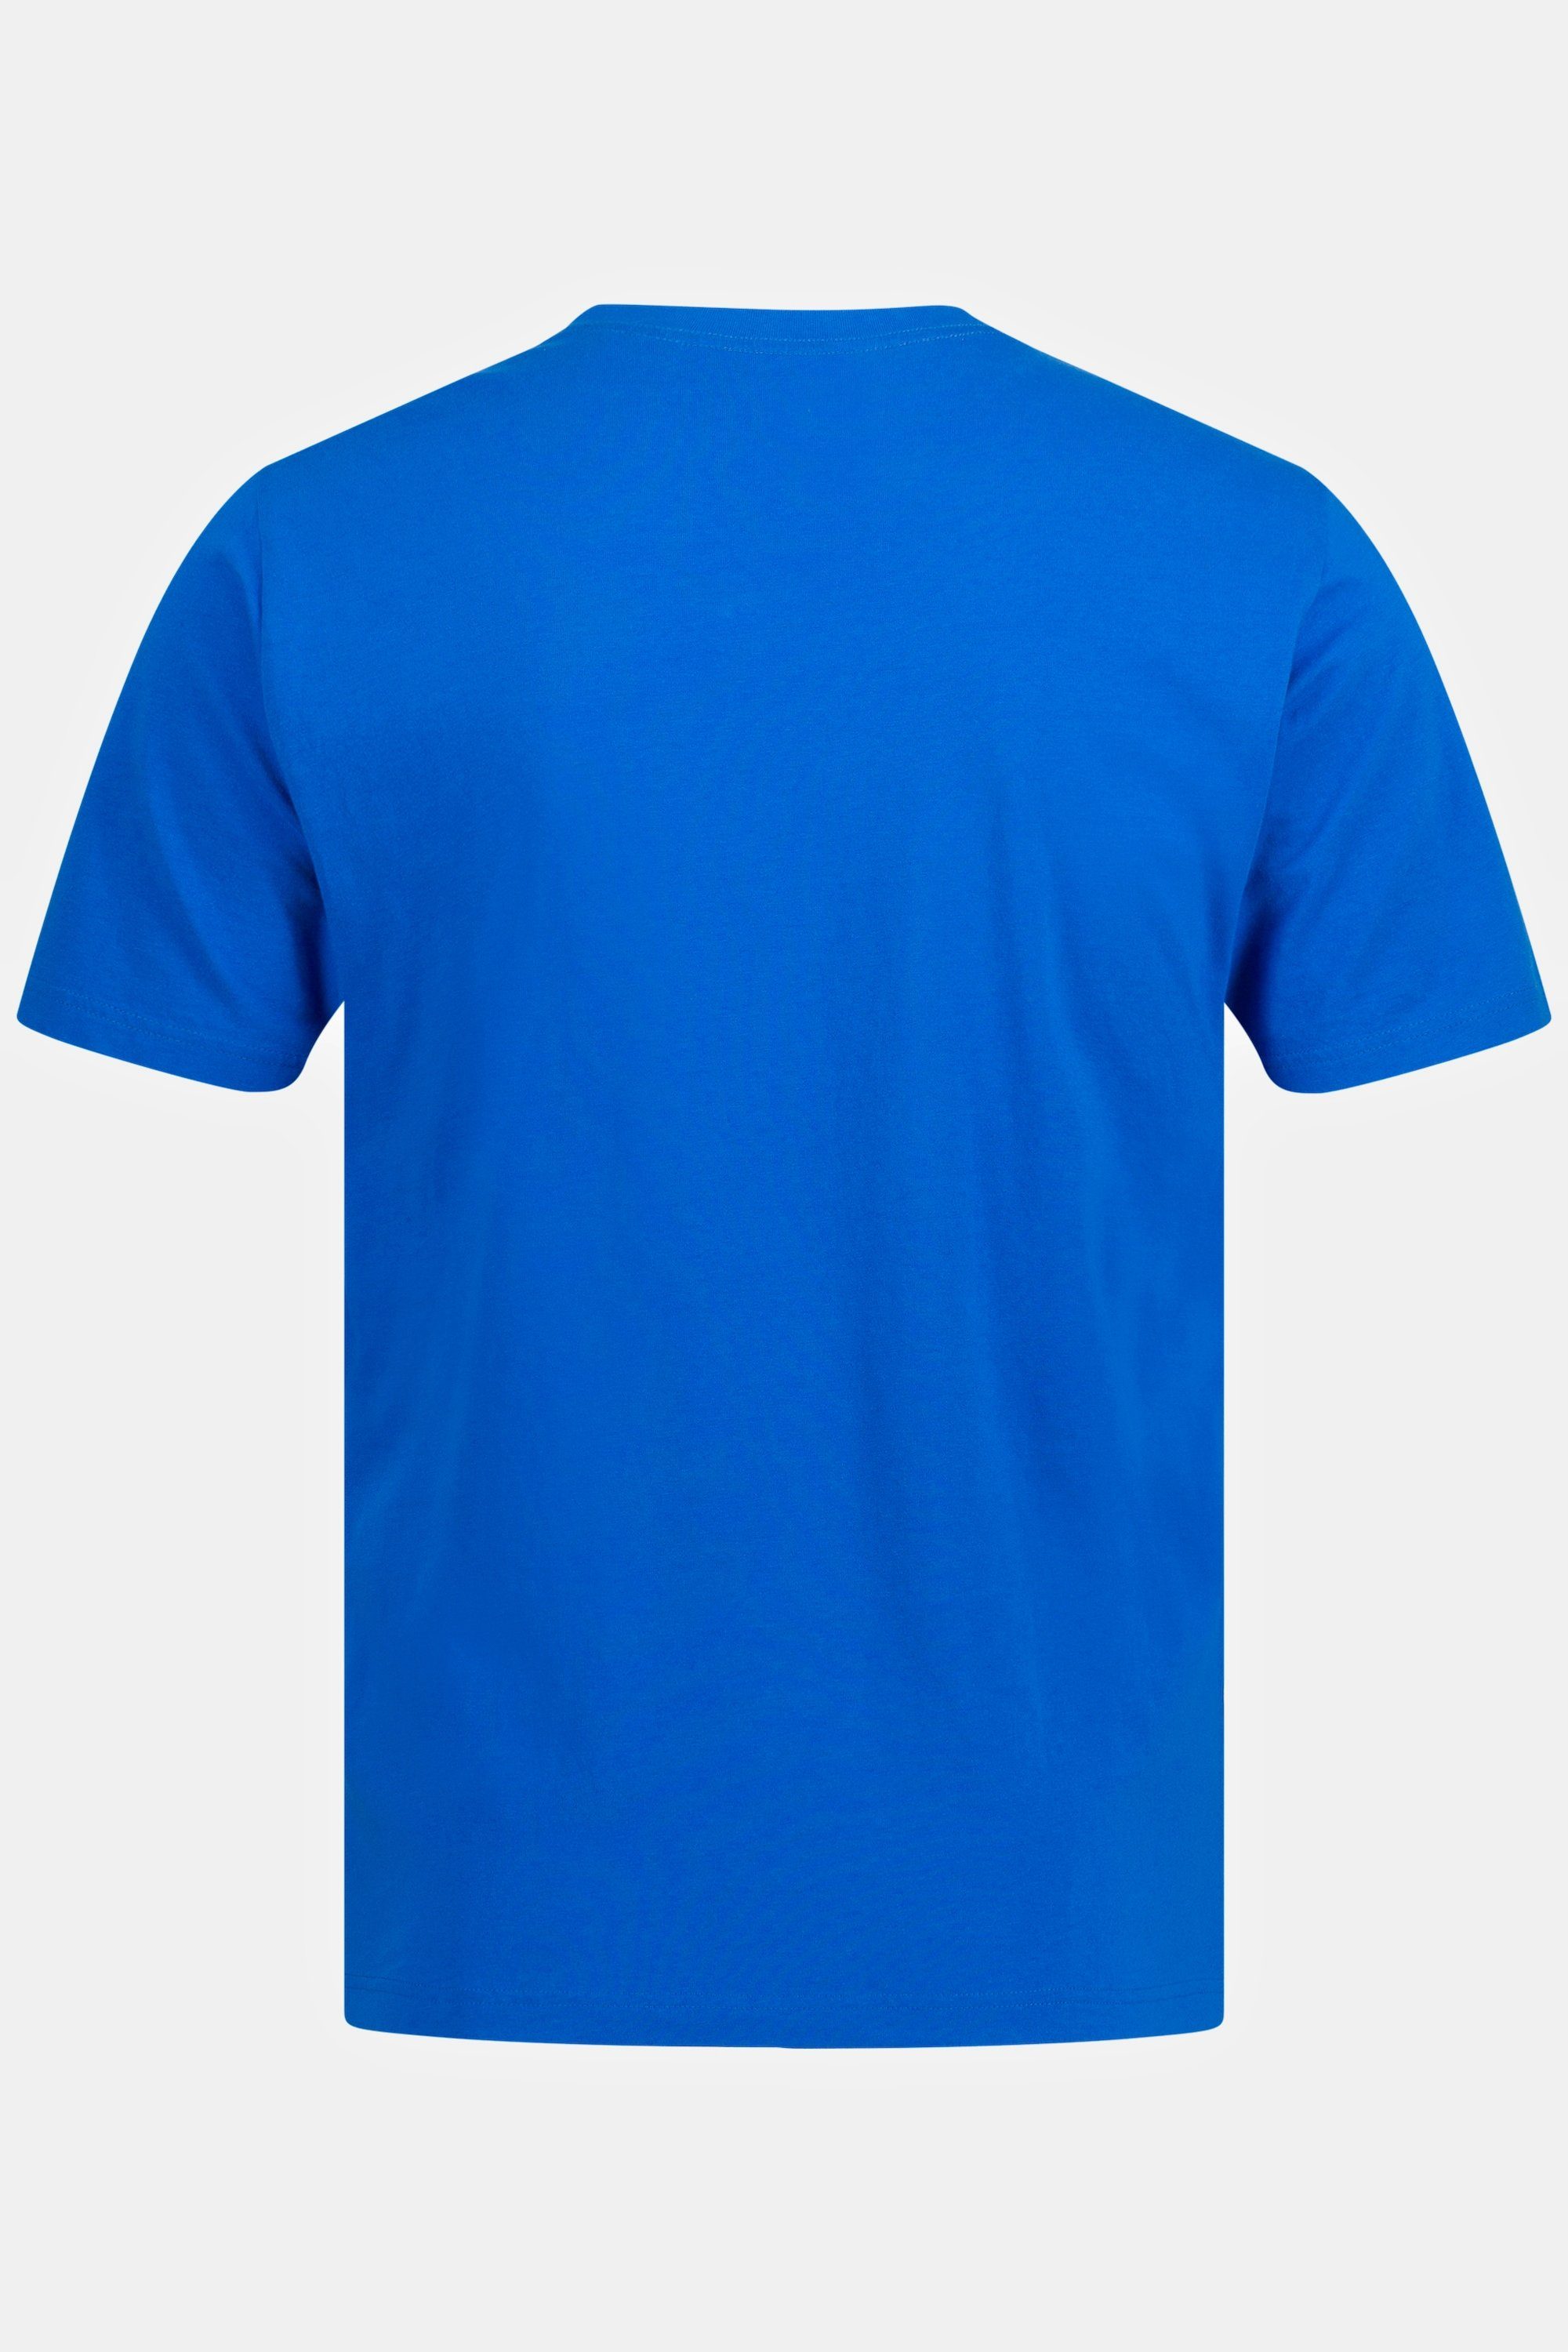 V-Ausschnitt 8XL T-Shirt JP1880 T-Shirt Basic blau bis